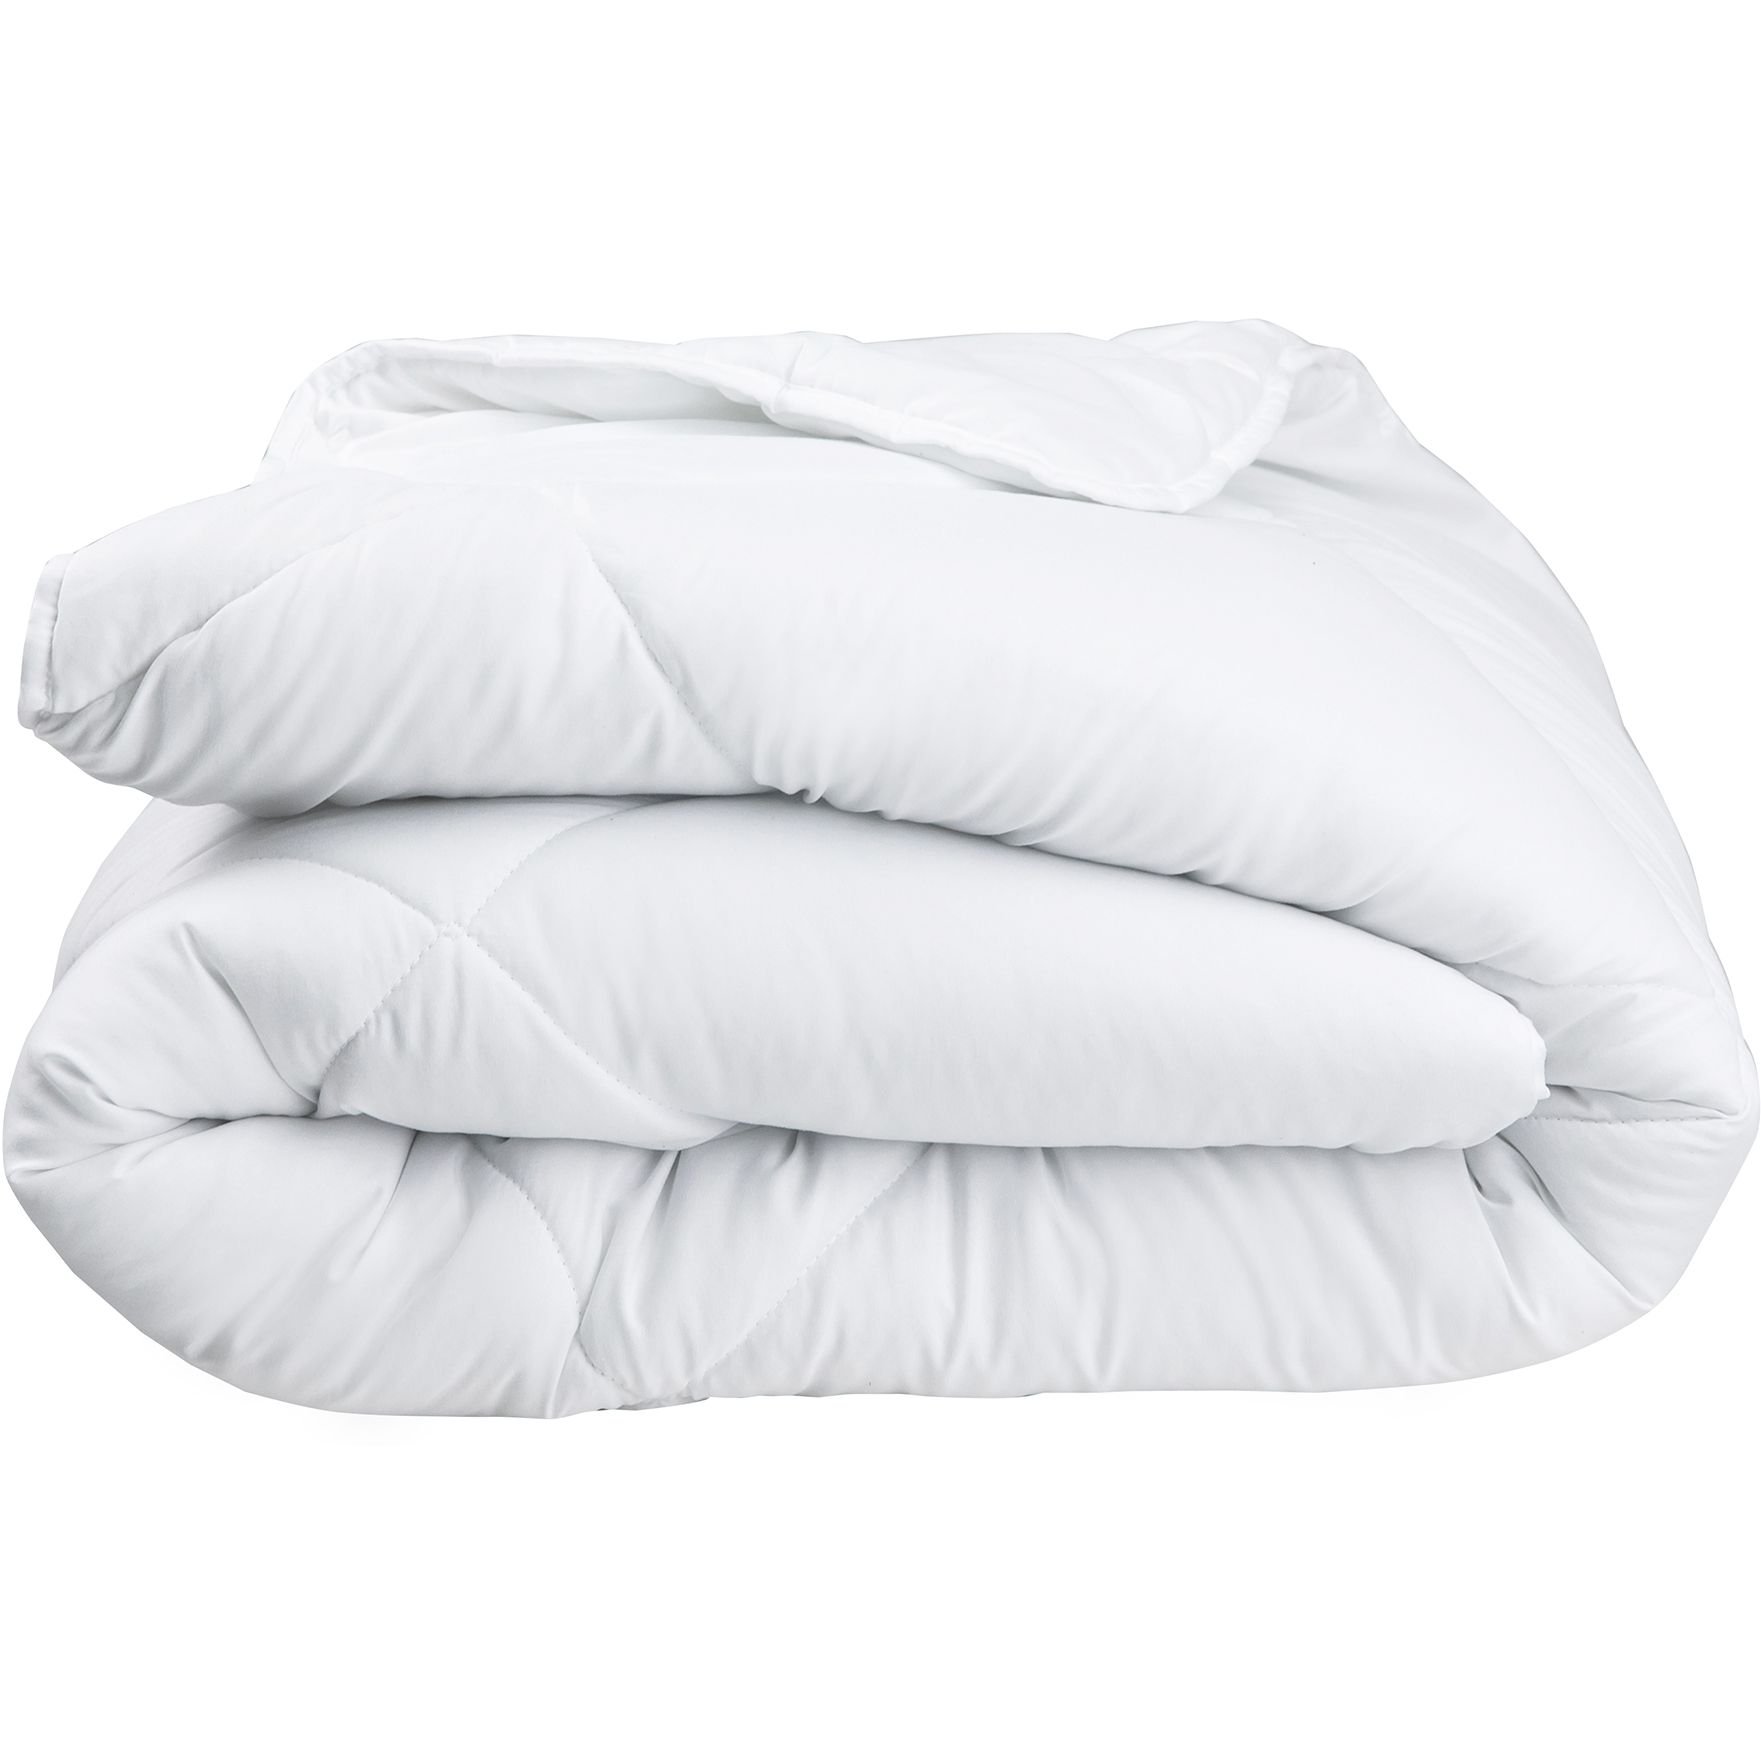 Одеяло ТЕП White Comfort 140x205 белое (1-02803_00000) - фото 1